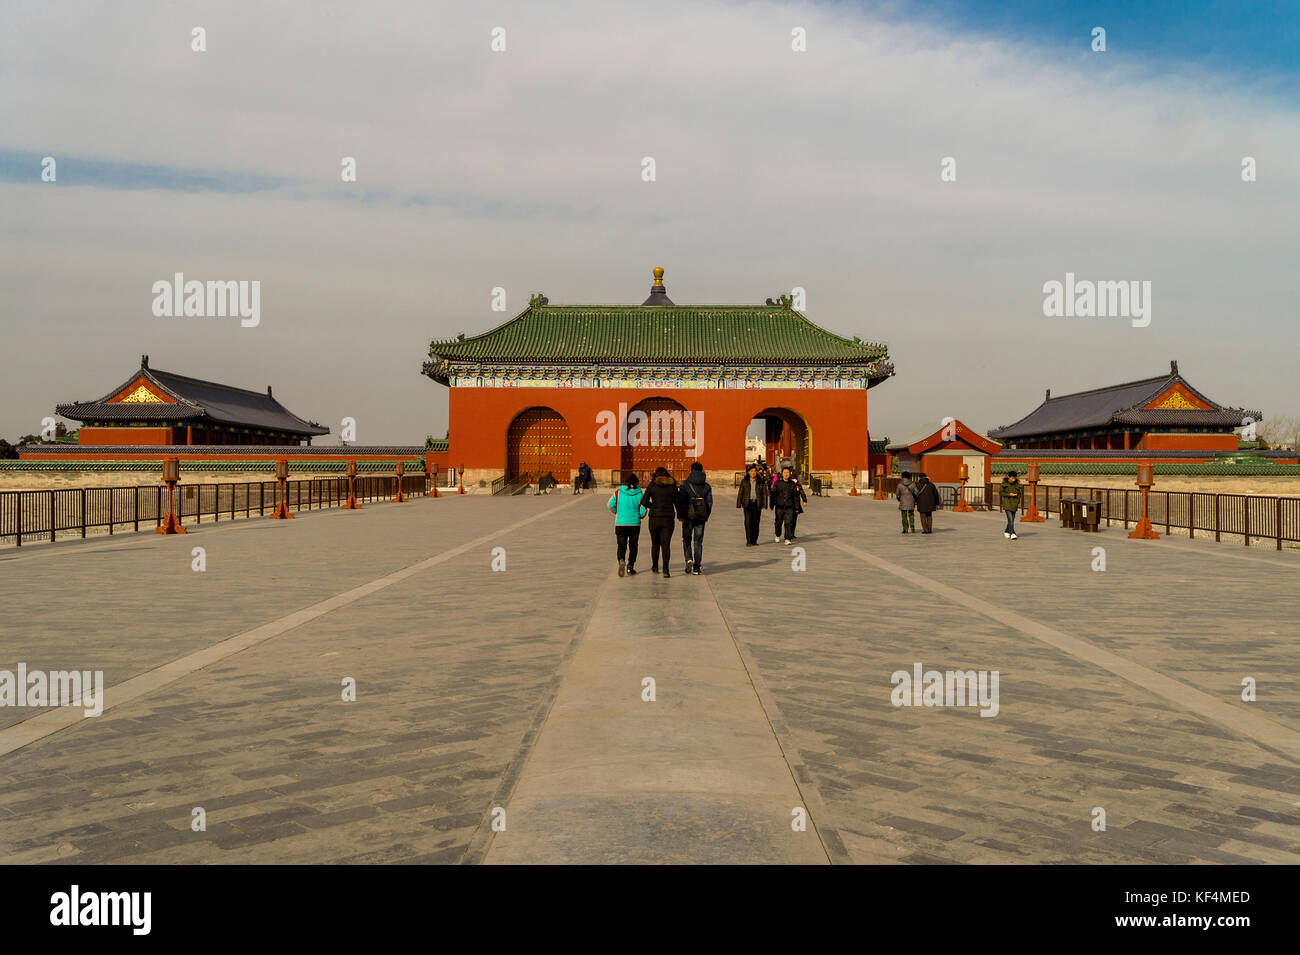 Asia cina beijing perla de oriente viaje viaje torre de televisión gran  muralla china plaza de Tian'anmen Fotografía de stock - Alamy